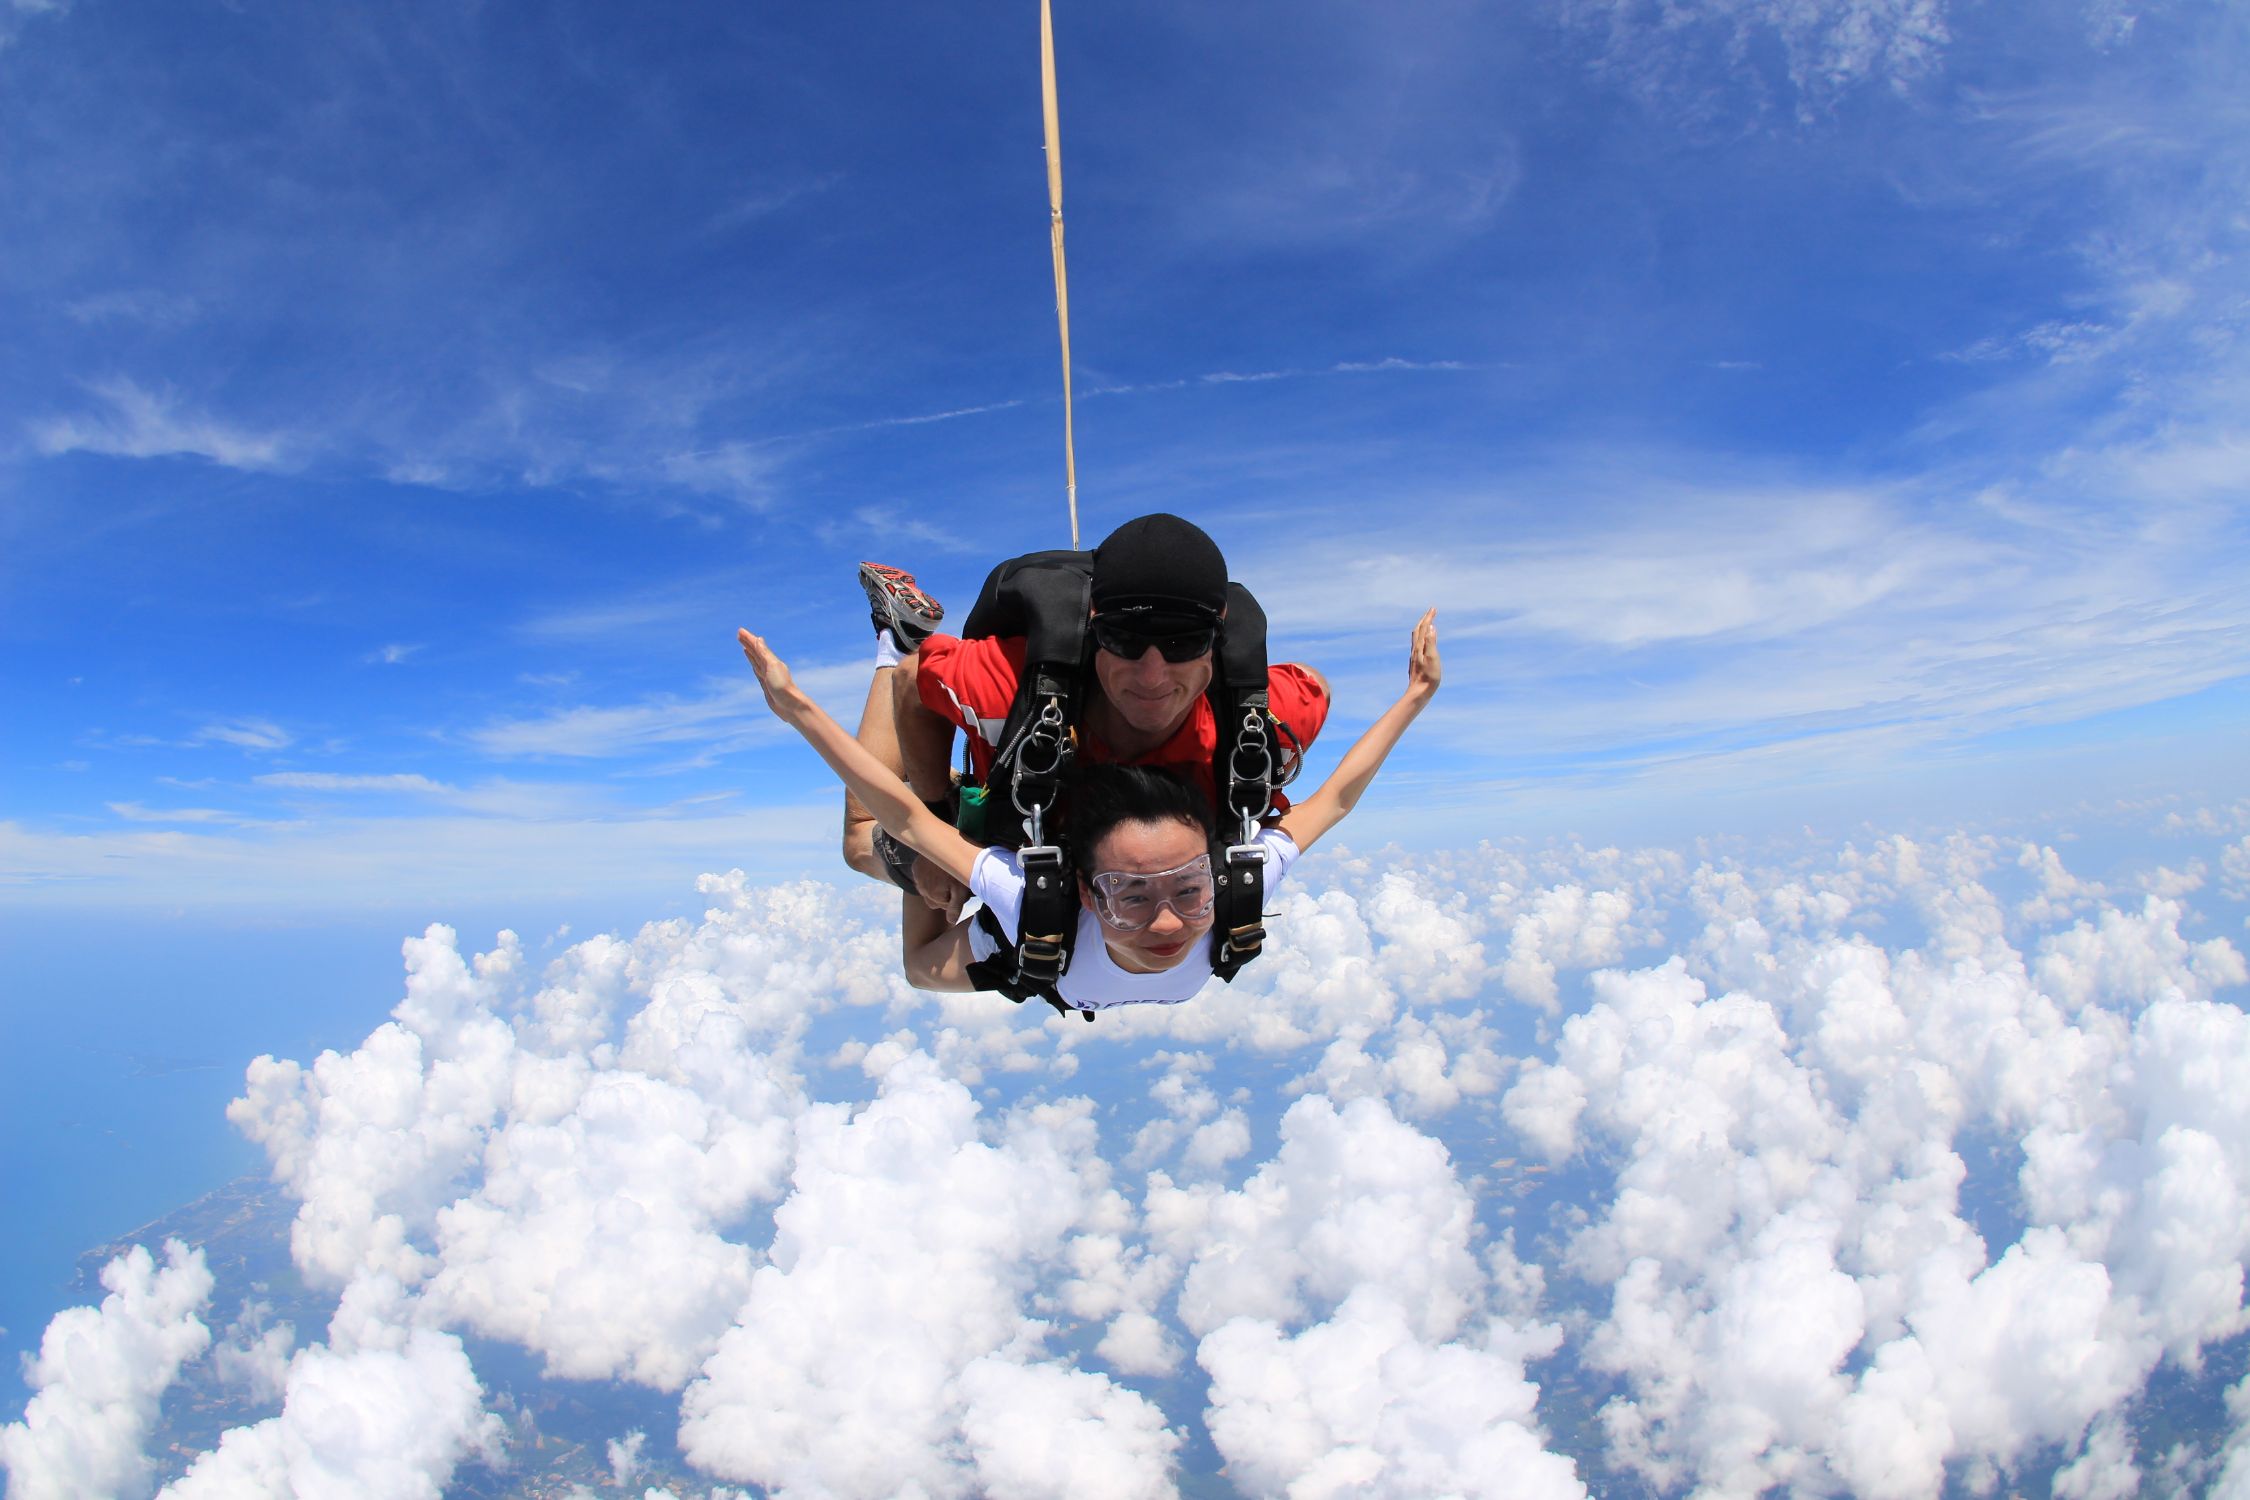 泰国芭提雅跳伞! 飞机上升到4000米高空,风速强劲到面部 